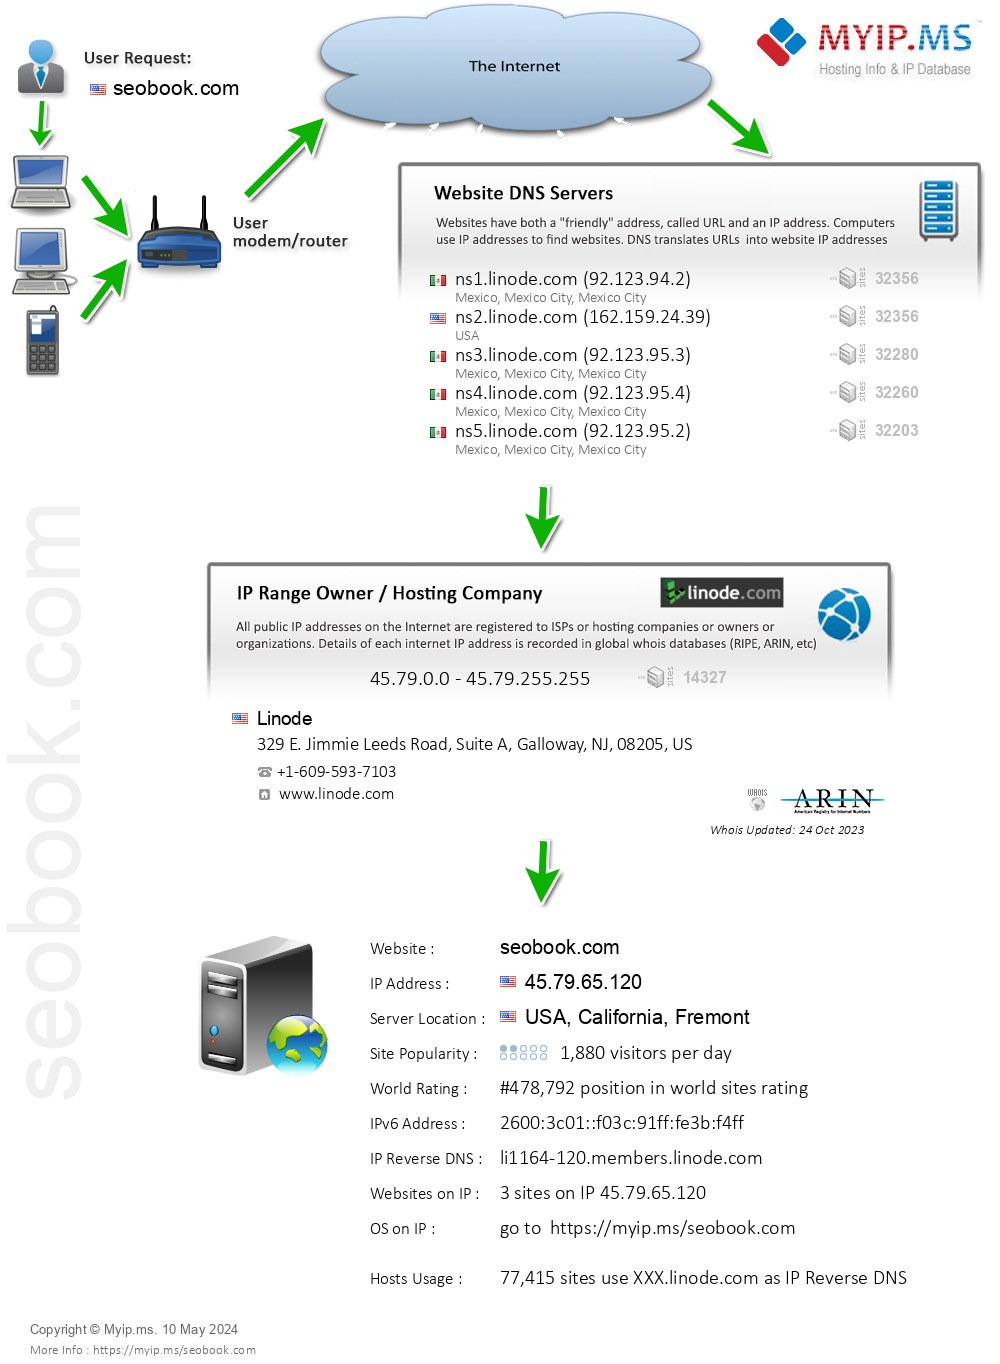 Seobook.com - Website Hosting Visual IP Diagram